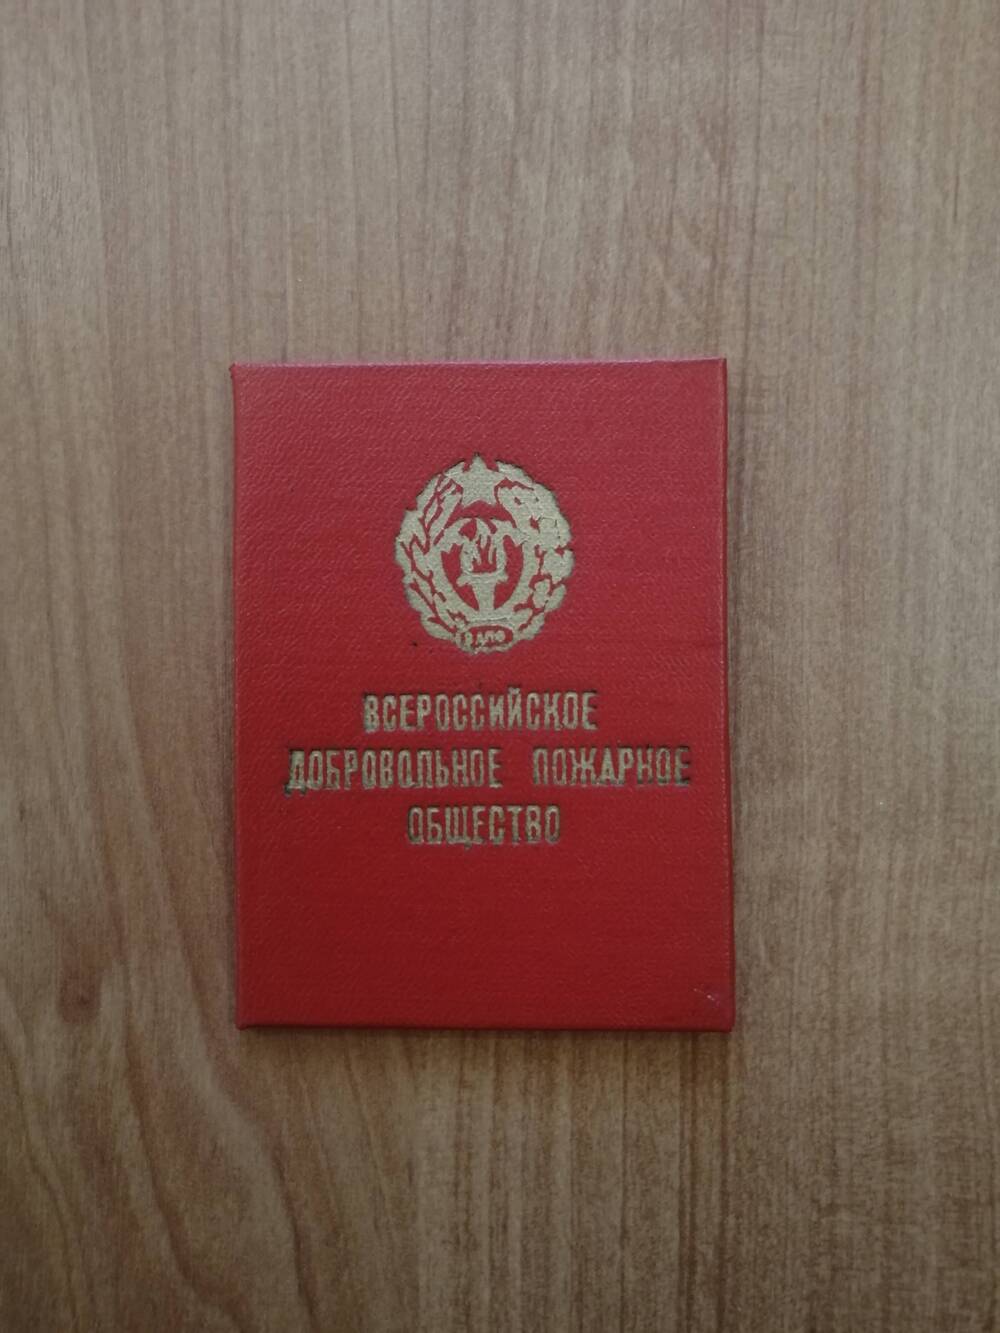 Билет членский Жукова Ефима Ивановича, члена Всероссийского добровольного пожарного общества.